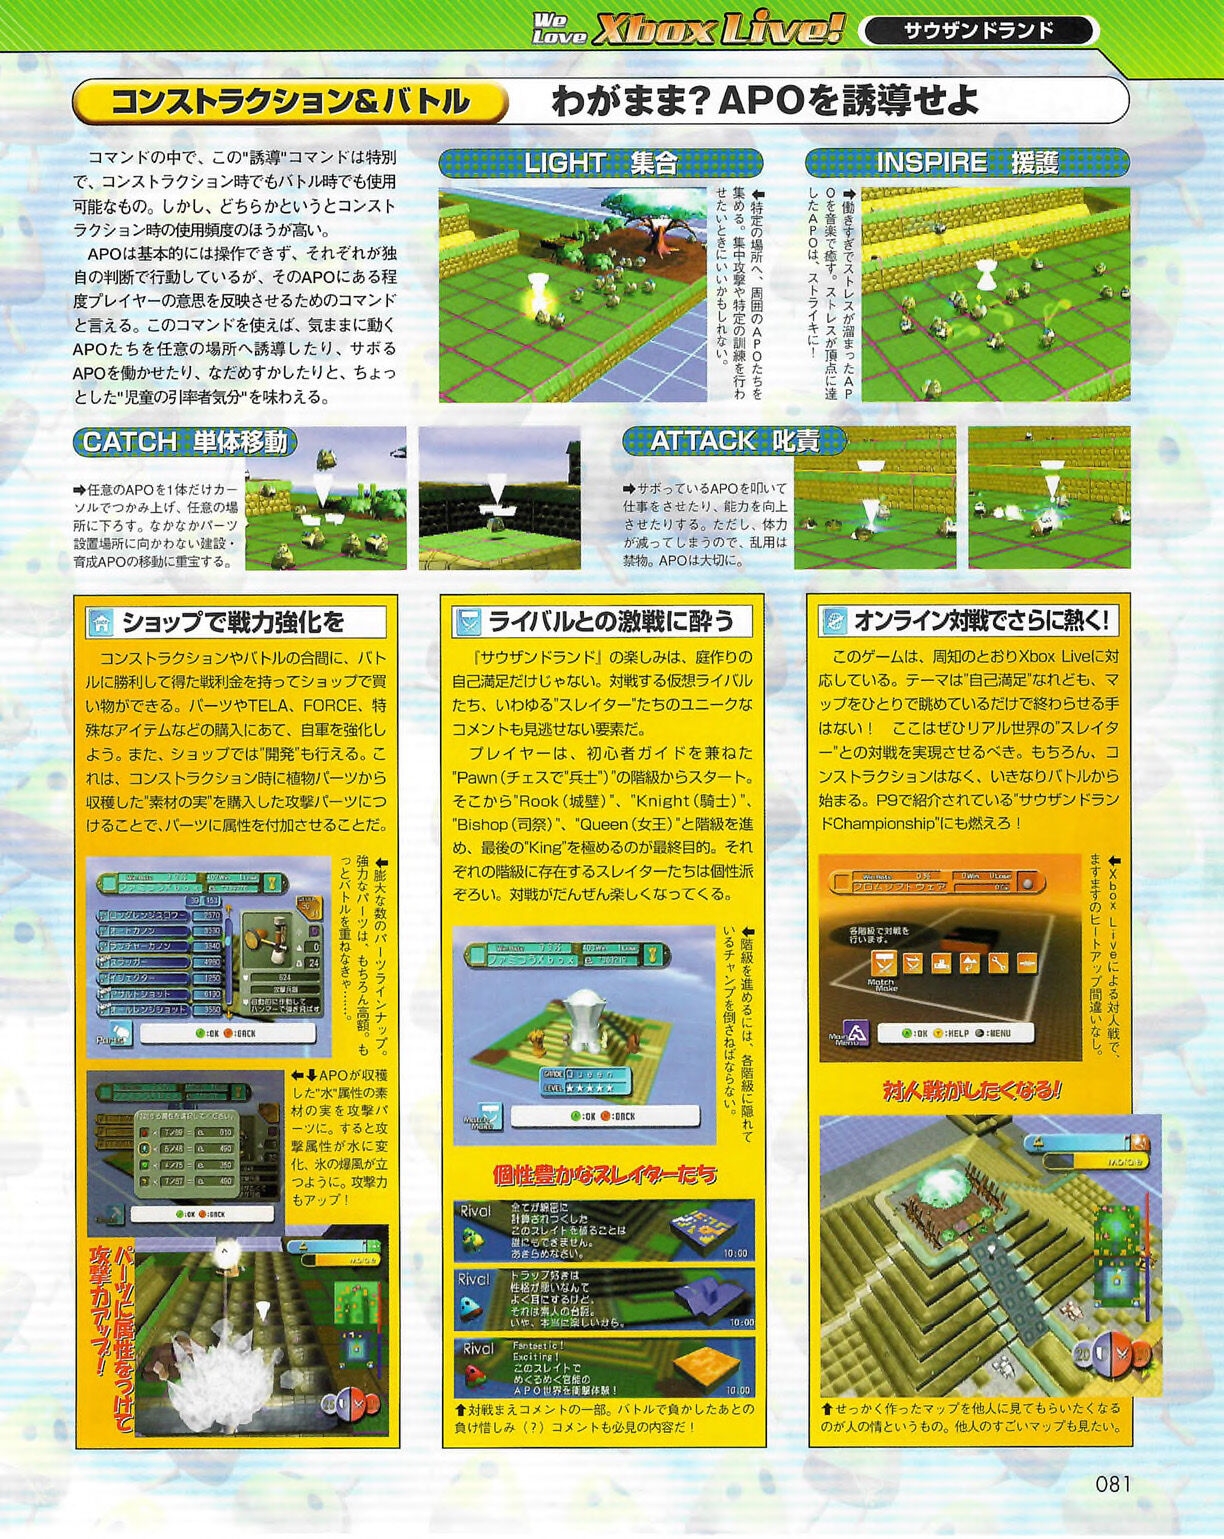 Famitsu_Xbox_2003-04_jp2 80